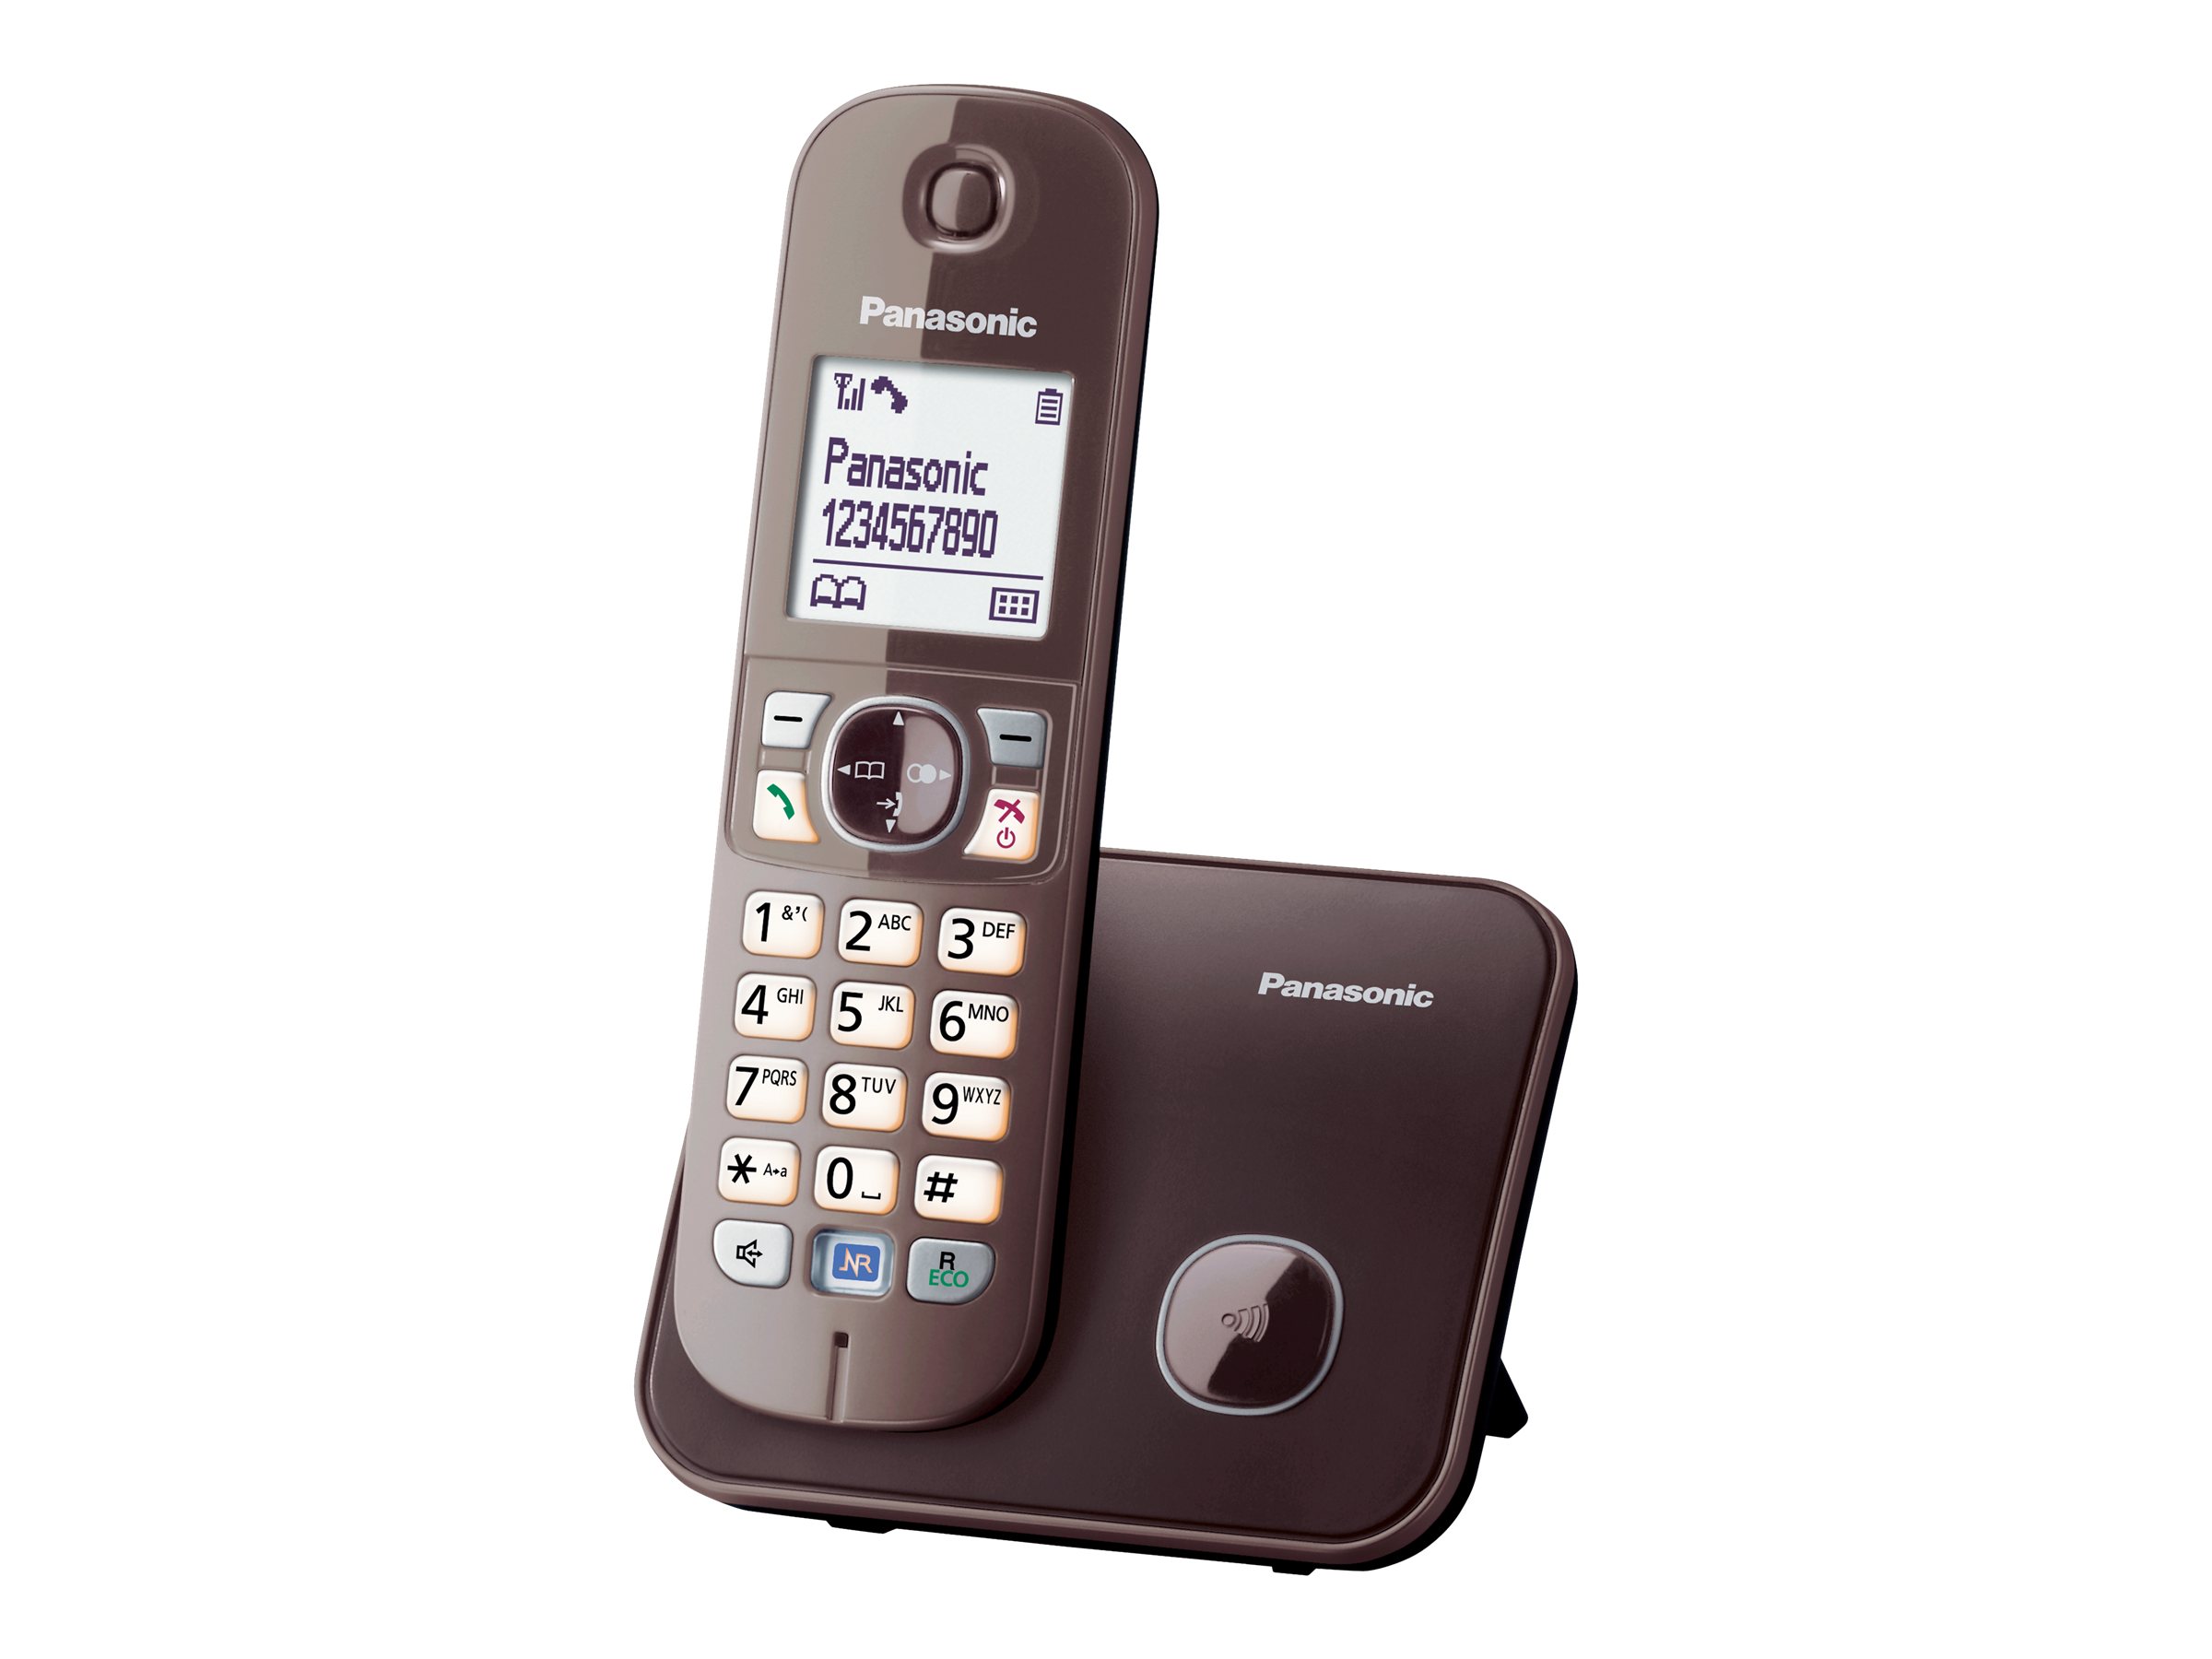 Panasonic KX-TG6811 - Schnurlostelefon mit Rufnummernanzeige